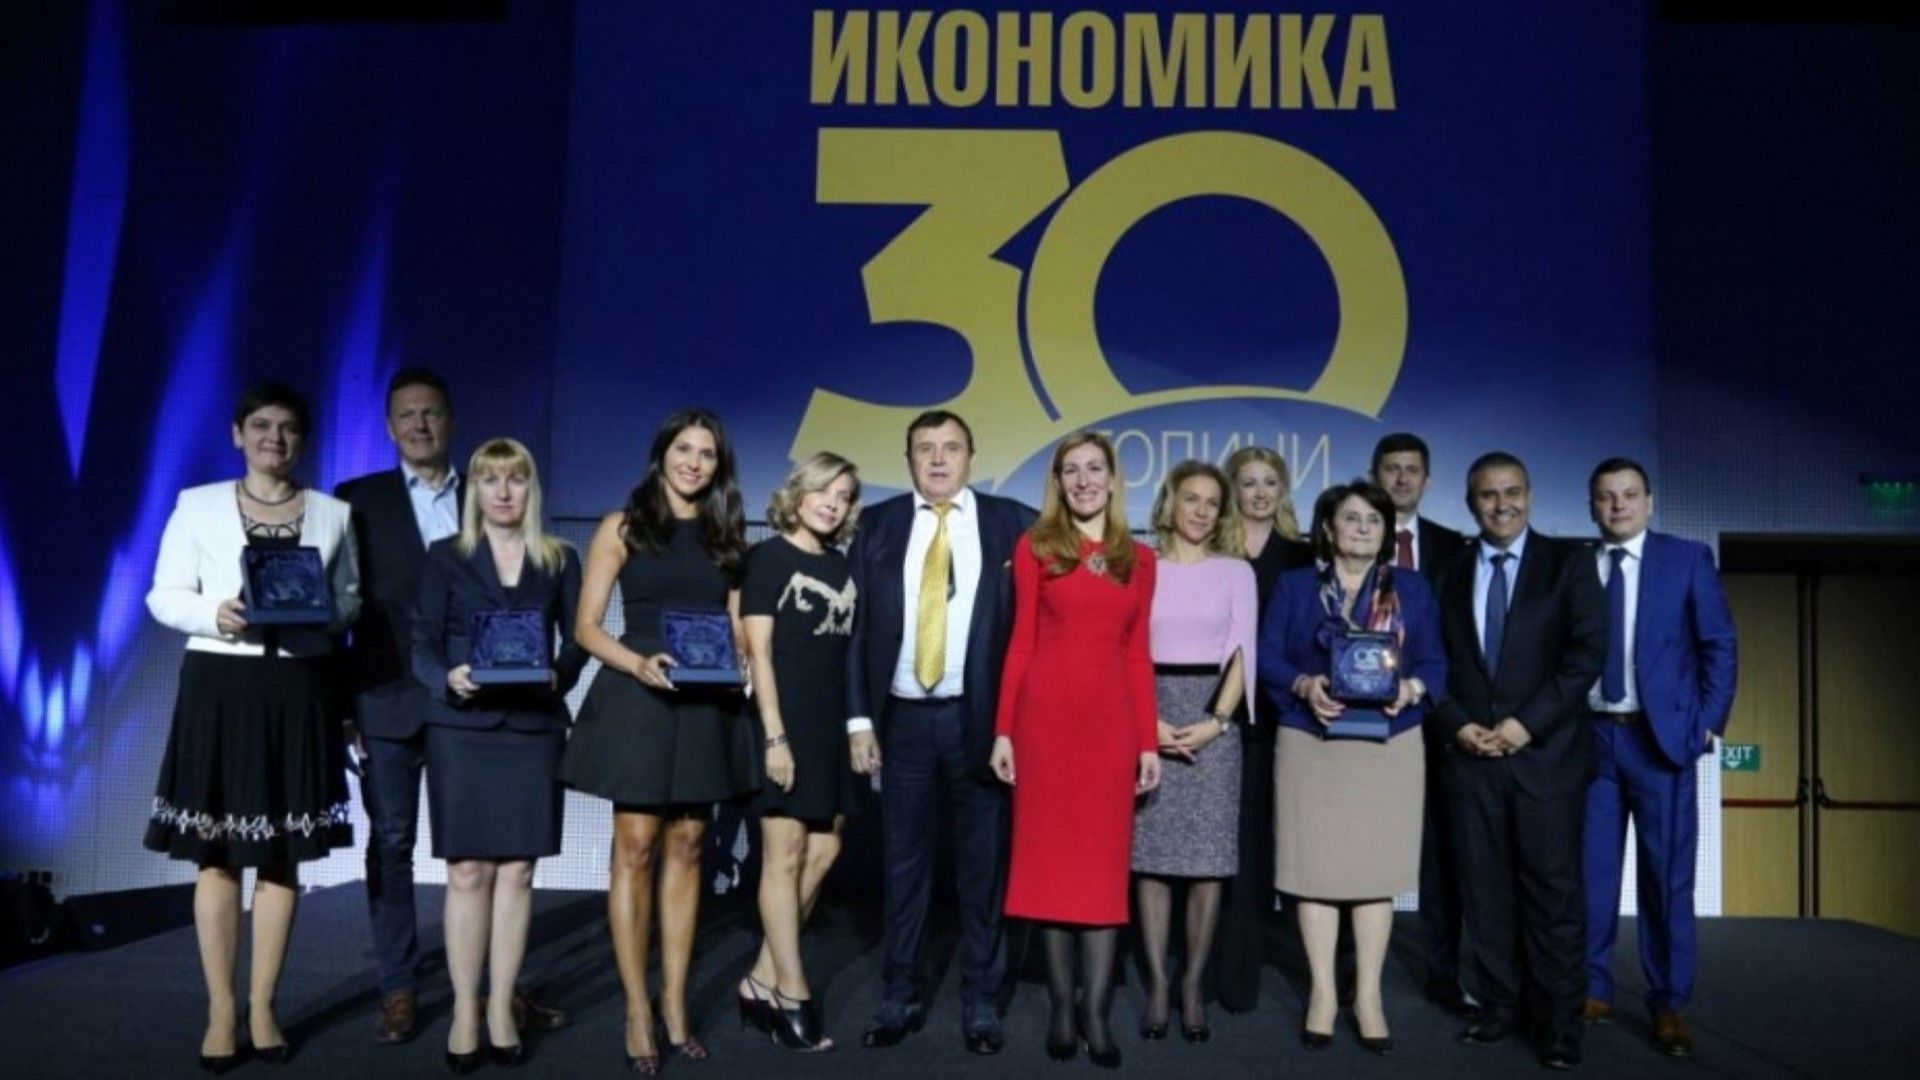 Лидерите в българския бизнес с награди за 30-годишния юбилей на списание "Икономика" (снимки)